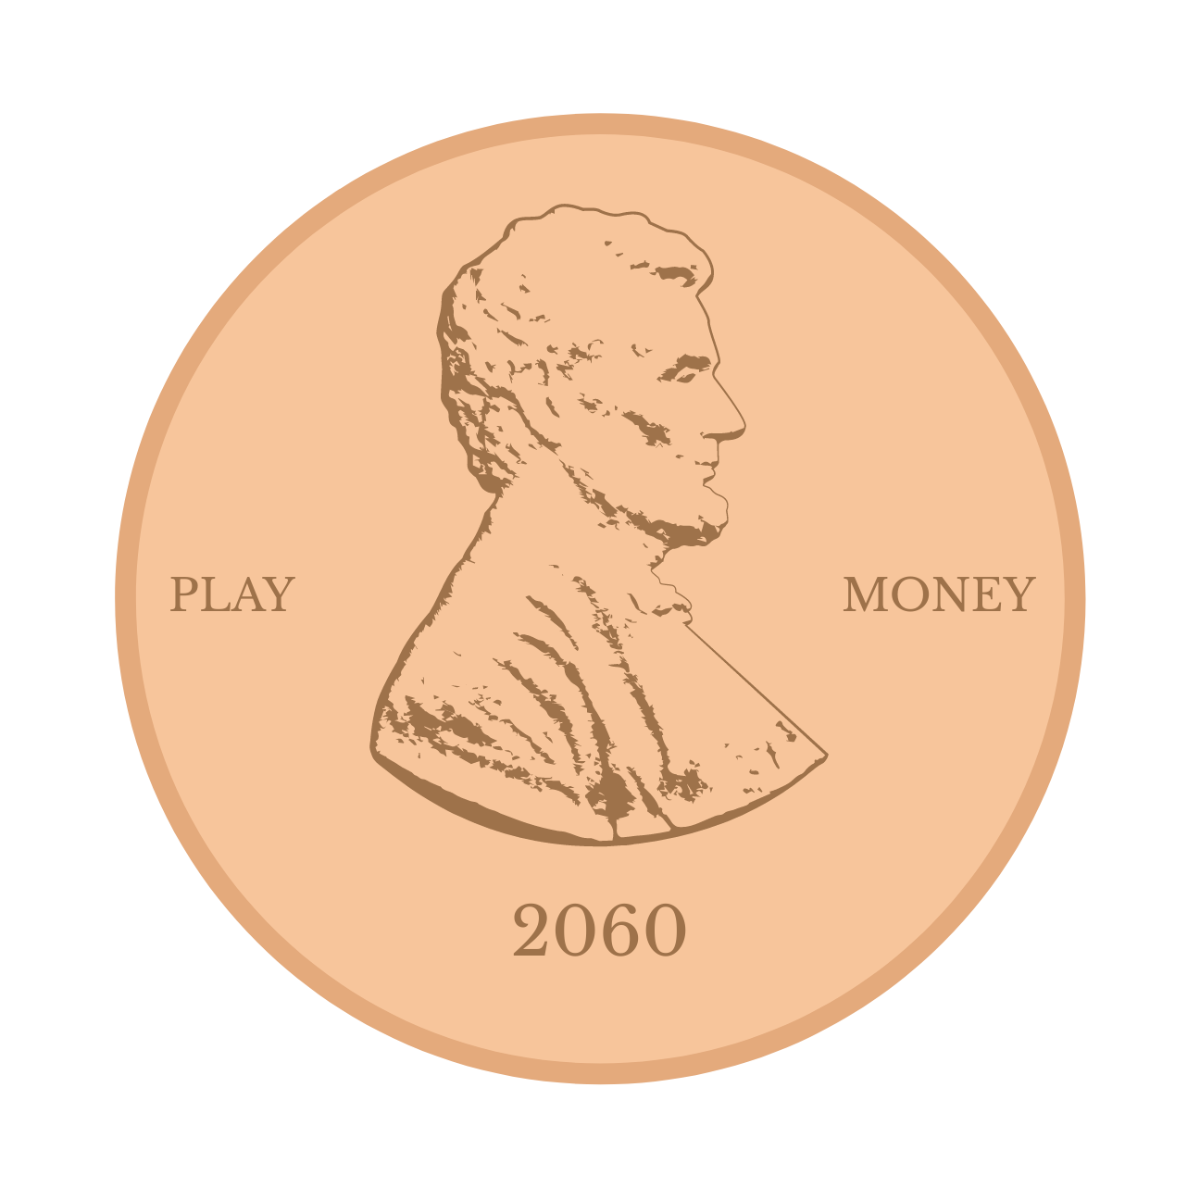 Play Money Coin